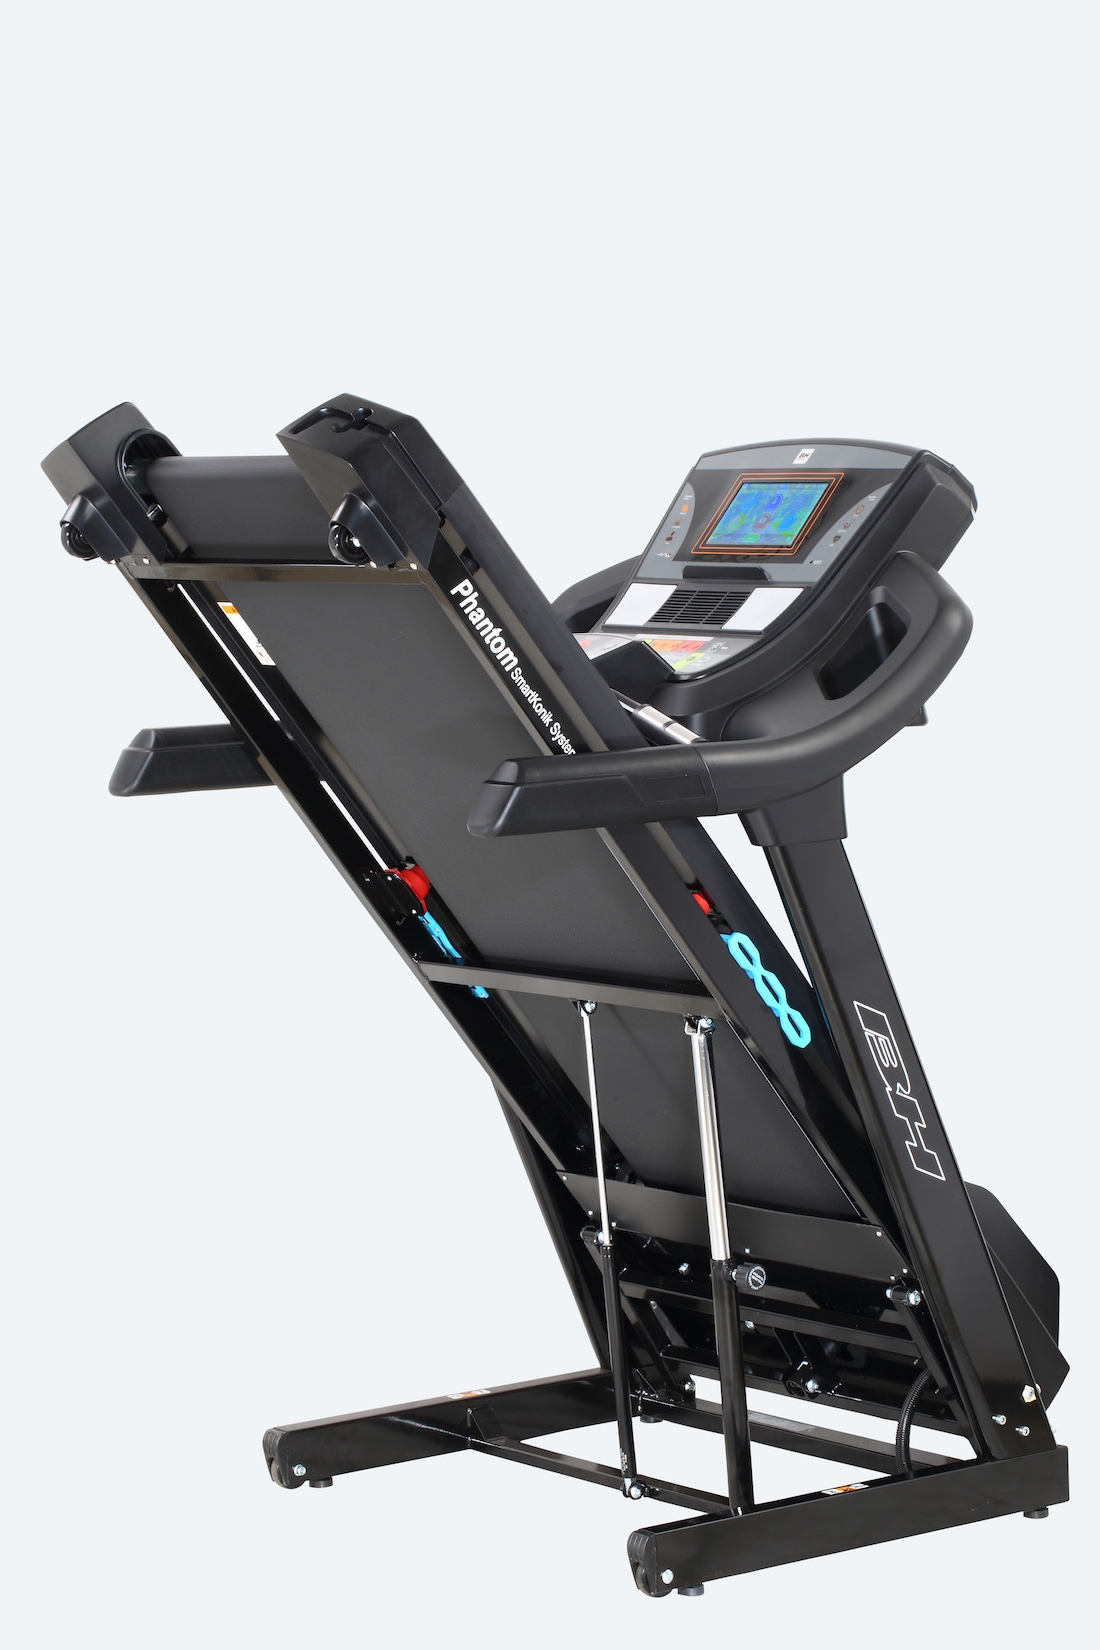 Cinta de correr BH Fitness HRT-02: pantalla Led intuitiva y controles de  acceso rápido para cambiar los ajustes de la máquina fácilmente - Tienda  Fisaude